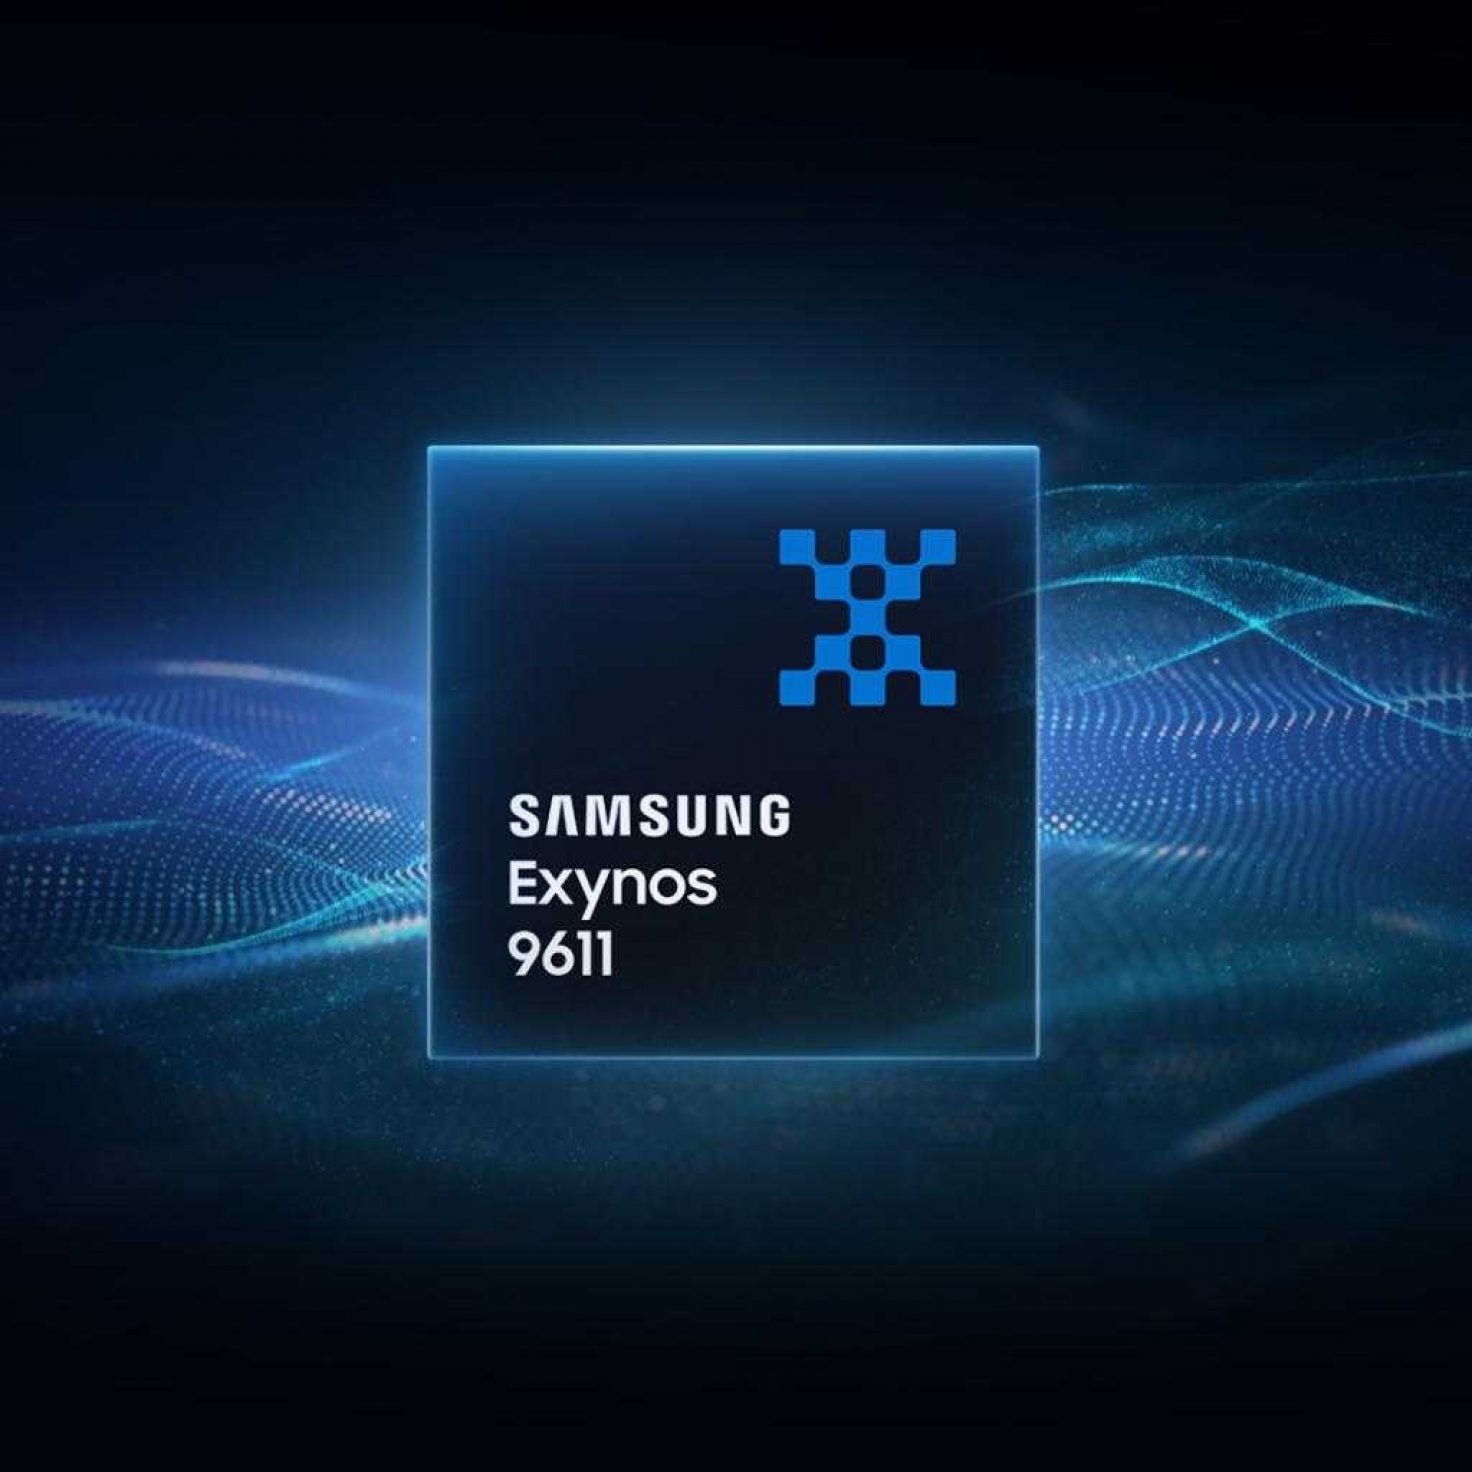 Samsung Exynos 4